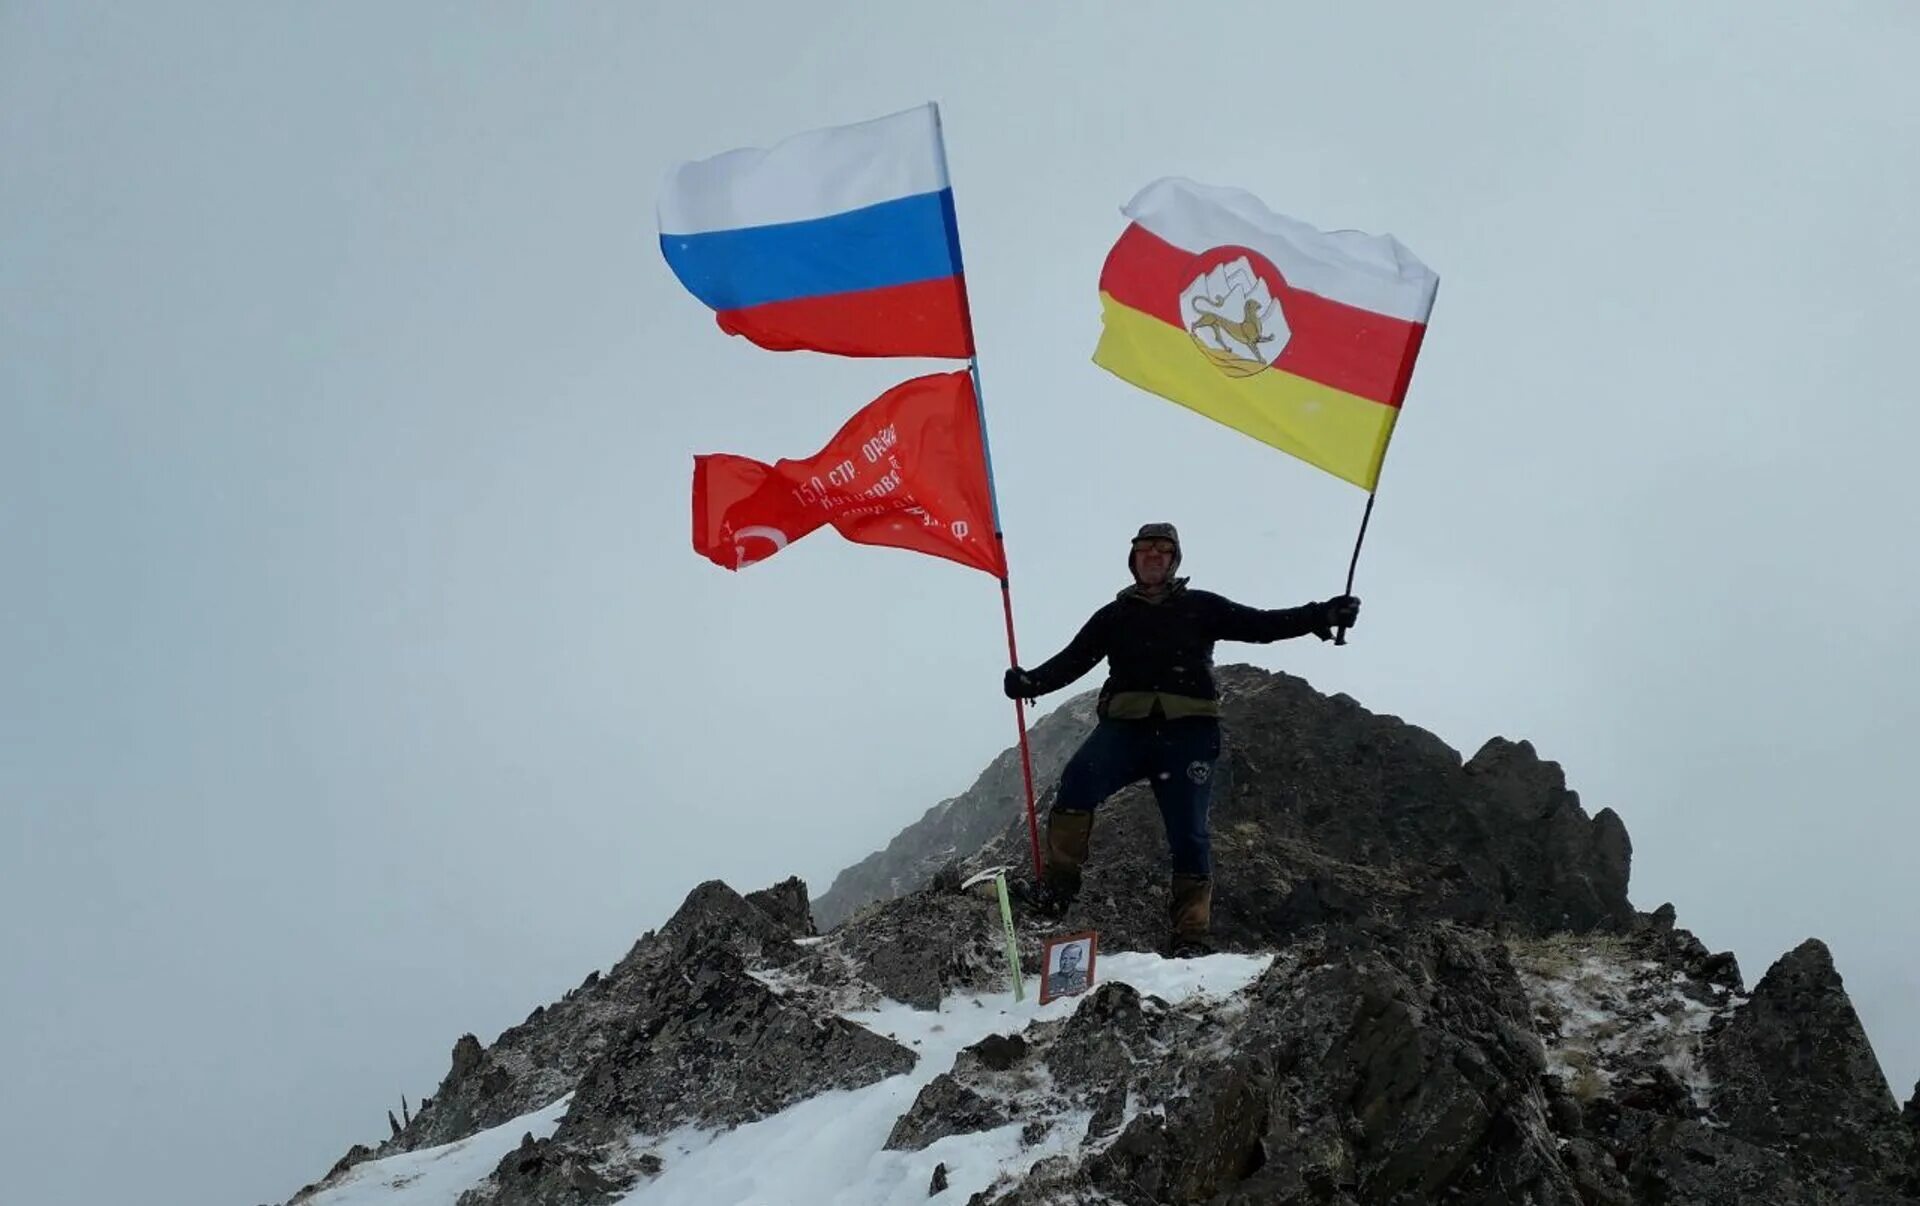 День северной осетии. Флаг Северной Осетии. Флаг Алании Осетии. Флаг РСО-Алания и Южной Осетии. Флаг флаг Осетии.